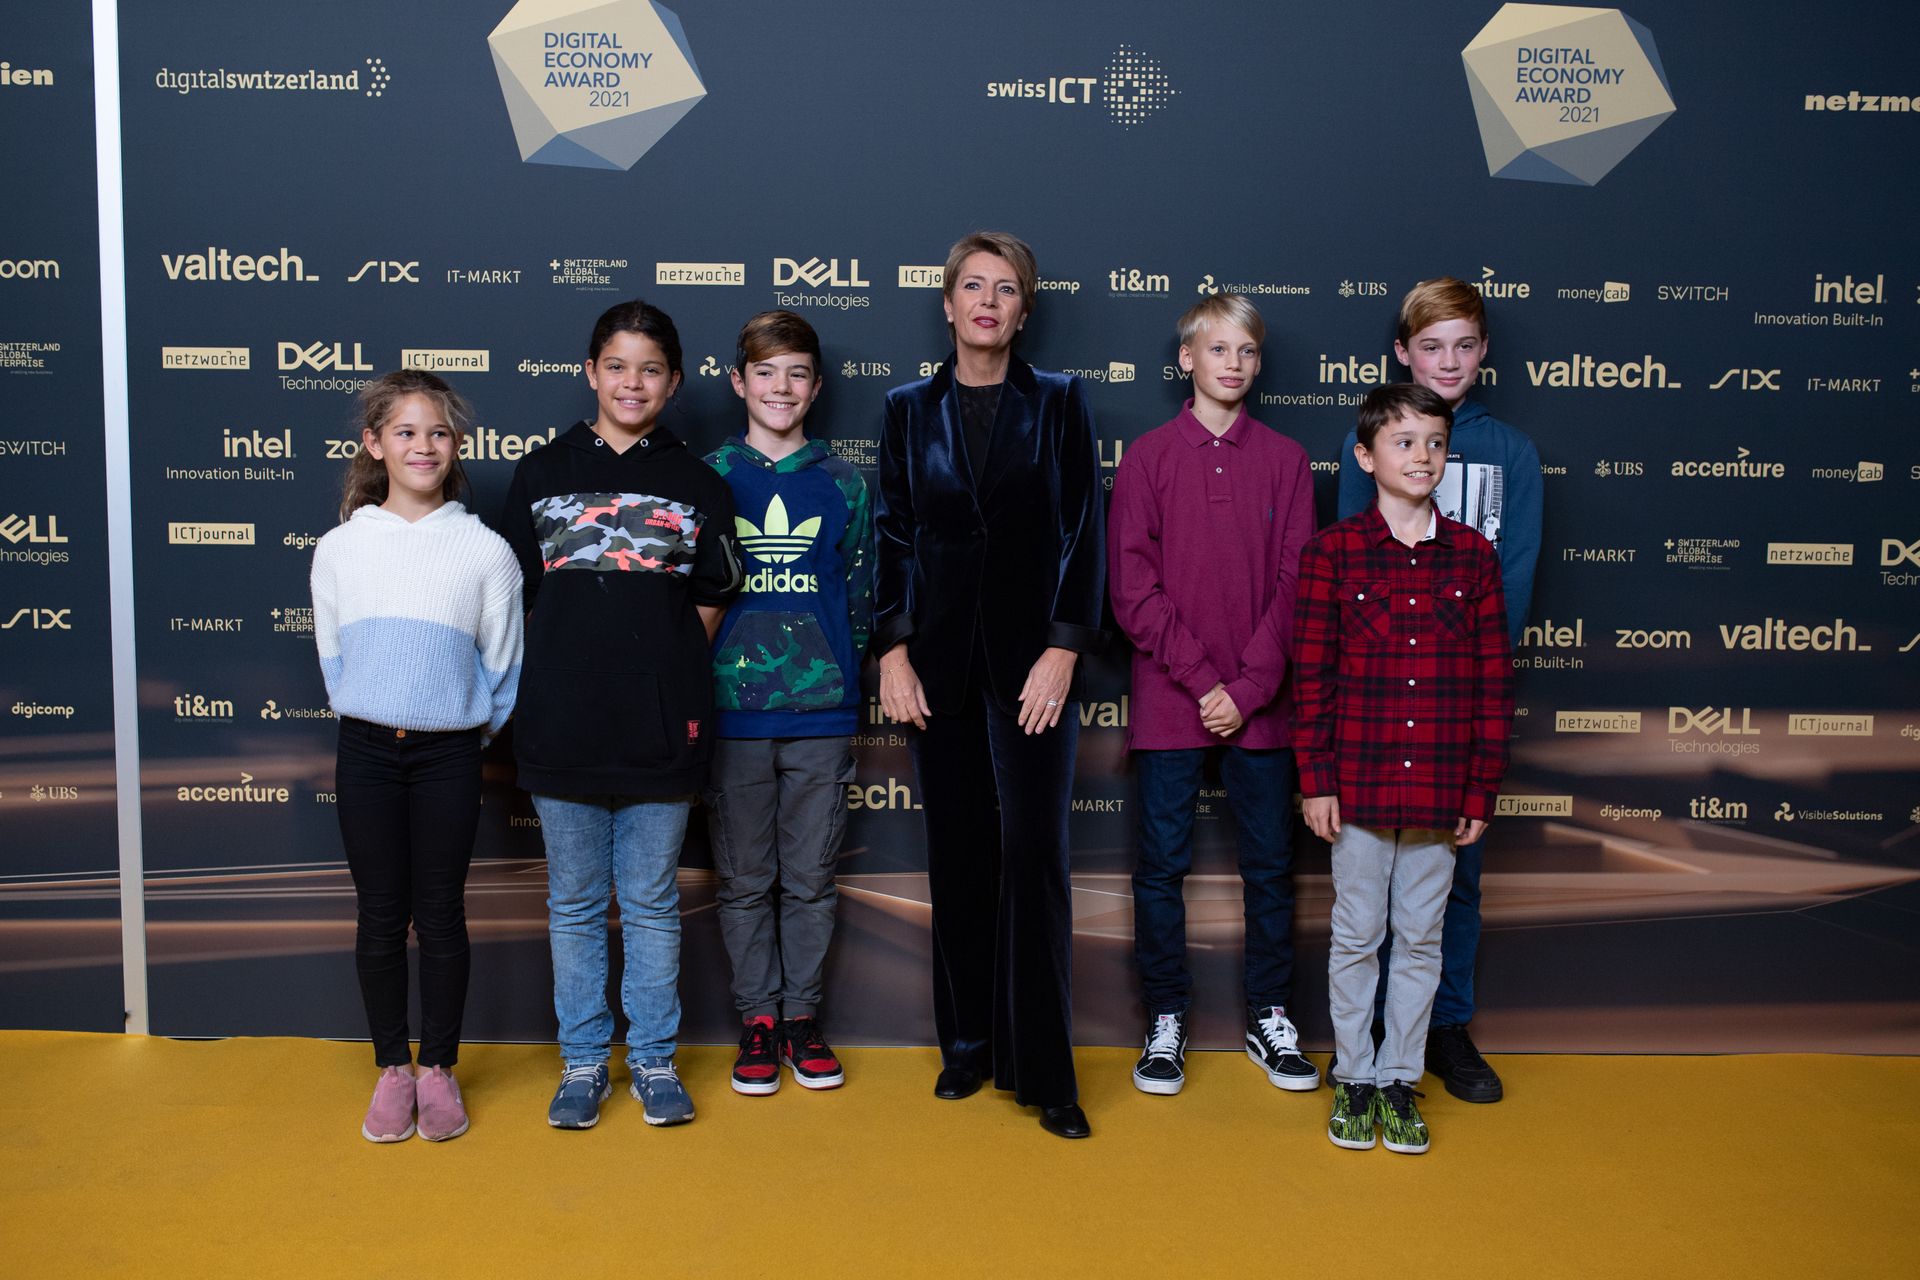 المستشارة الفيدرالية كارين كيلر سوتر مع بعض الشباب في "اليوم الرقمي سويسرا" في 10 نوفمبر 2021